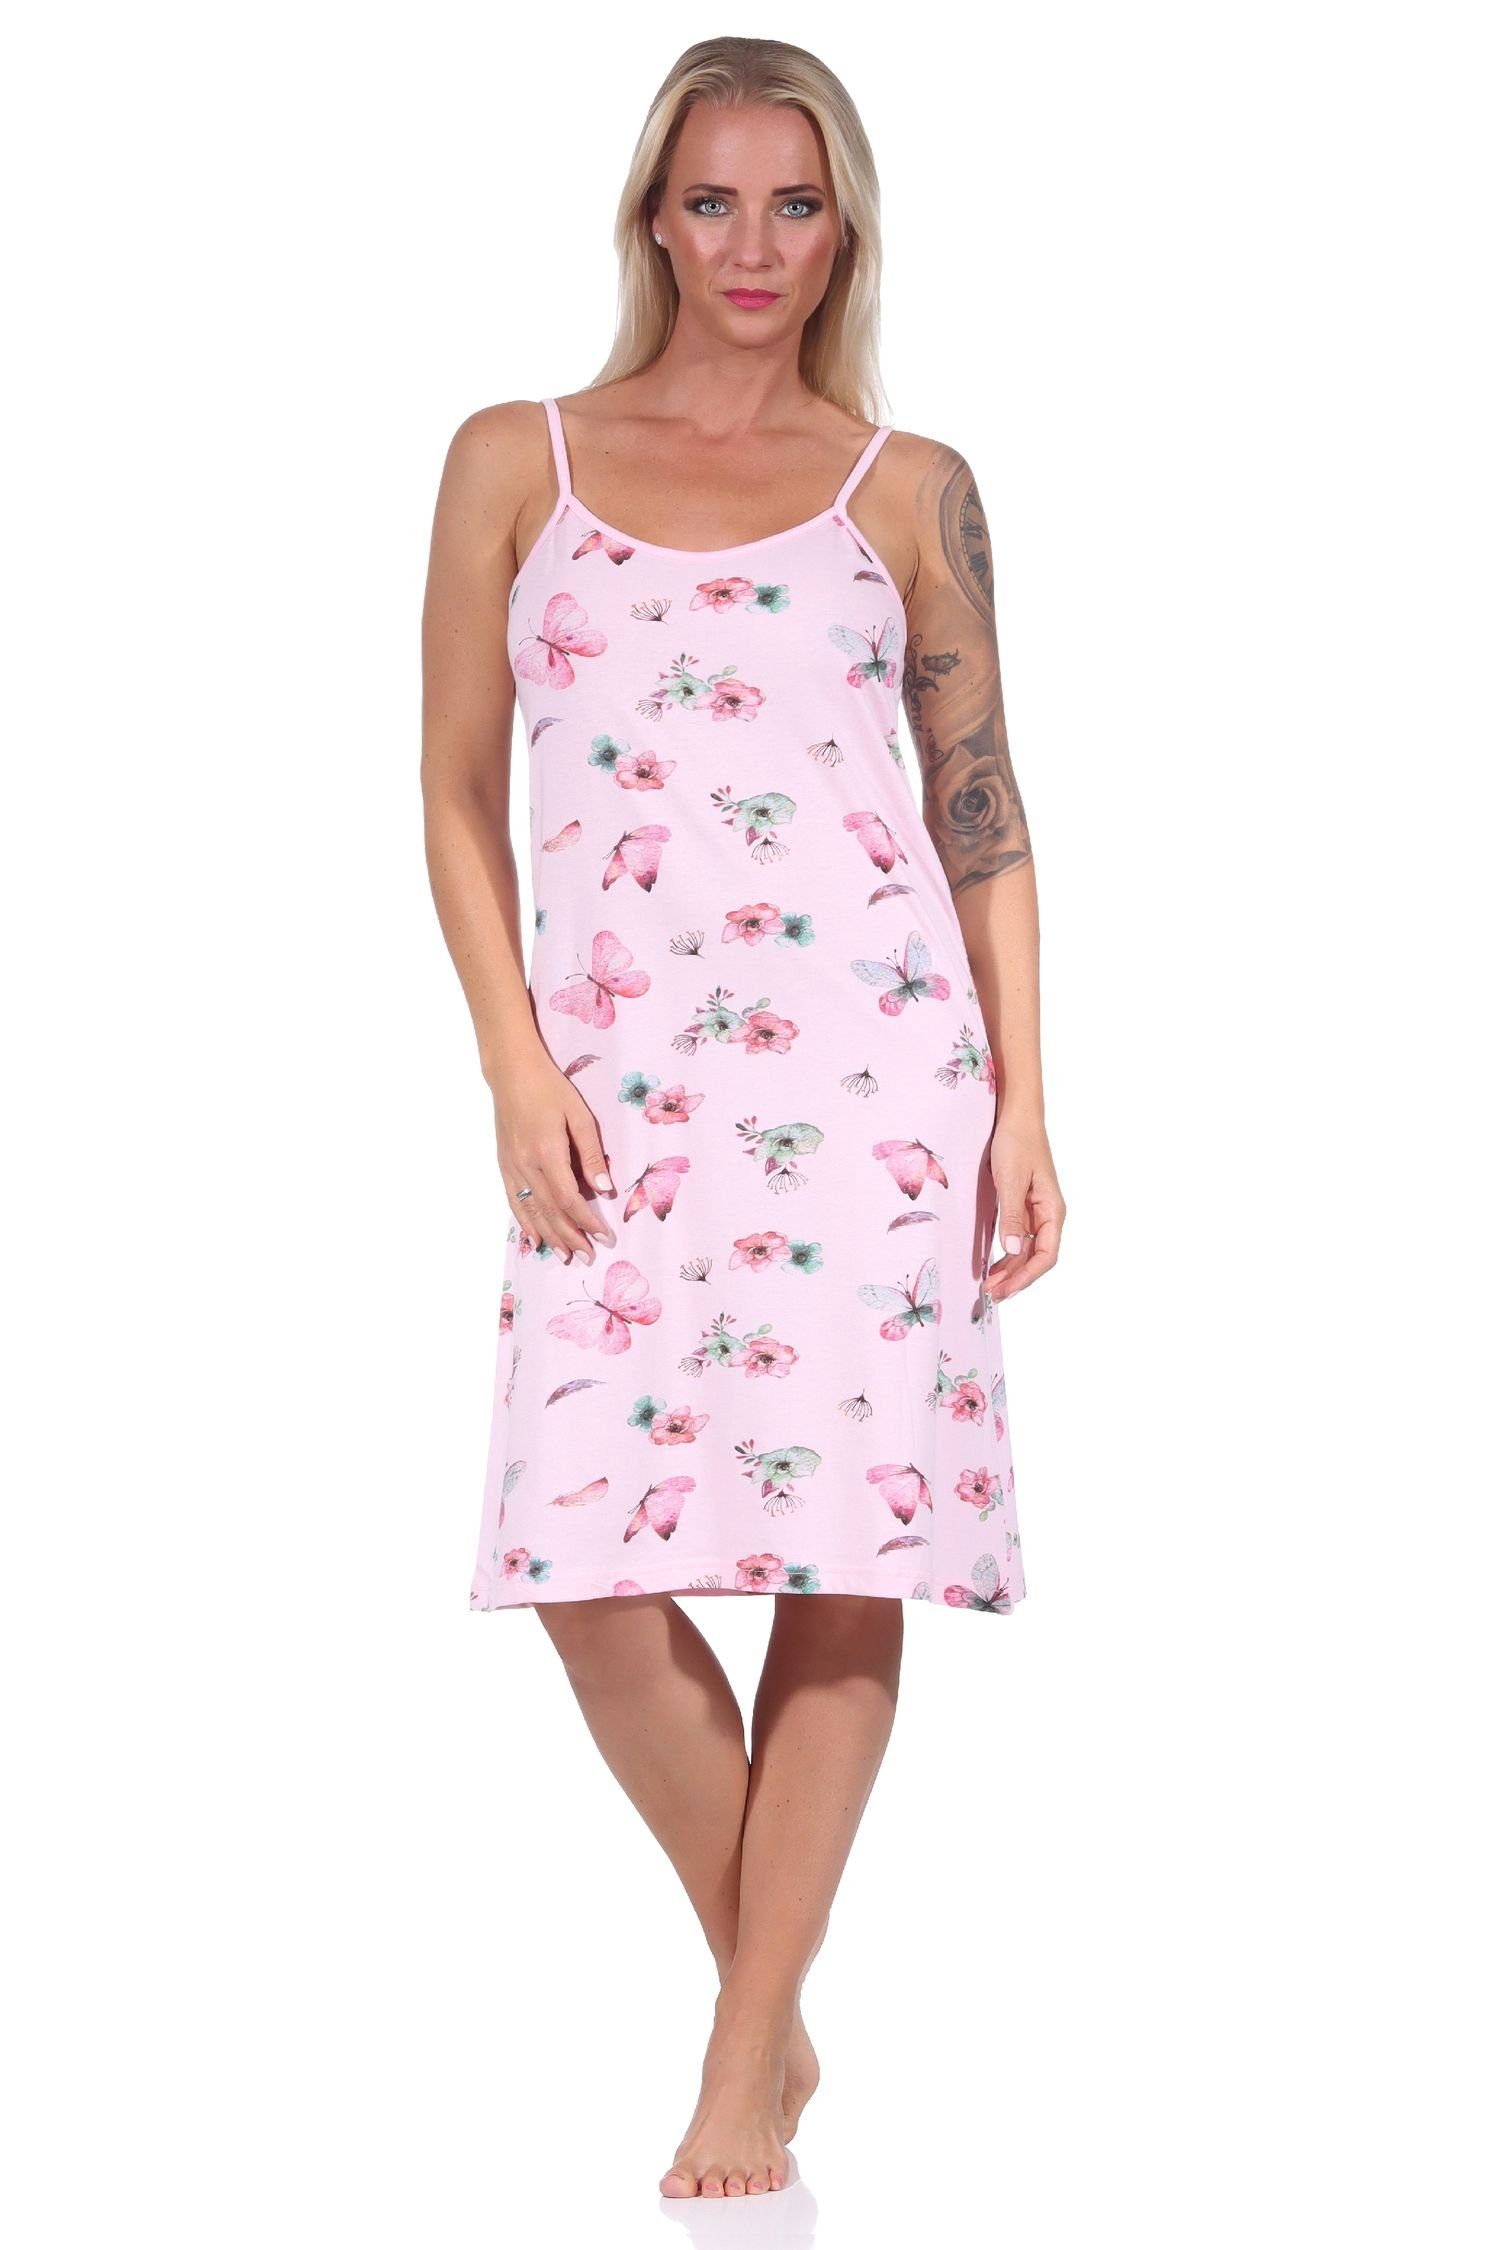 Normann Nachthemd Damen Spaghetti Nachthemd, florales Design - auch in Übergrößen rosa